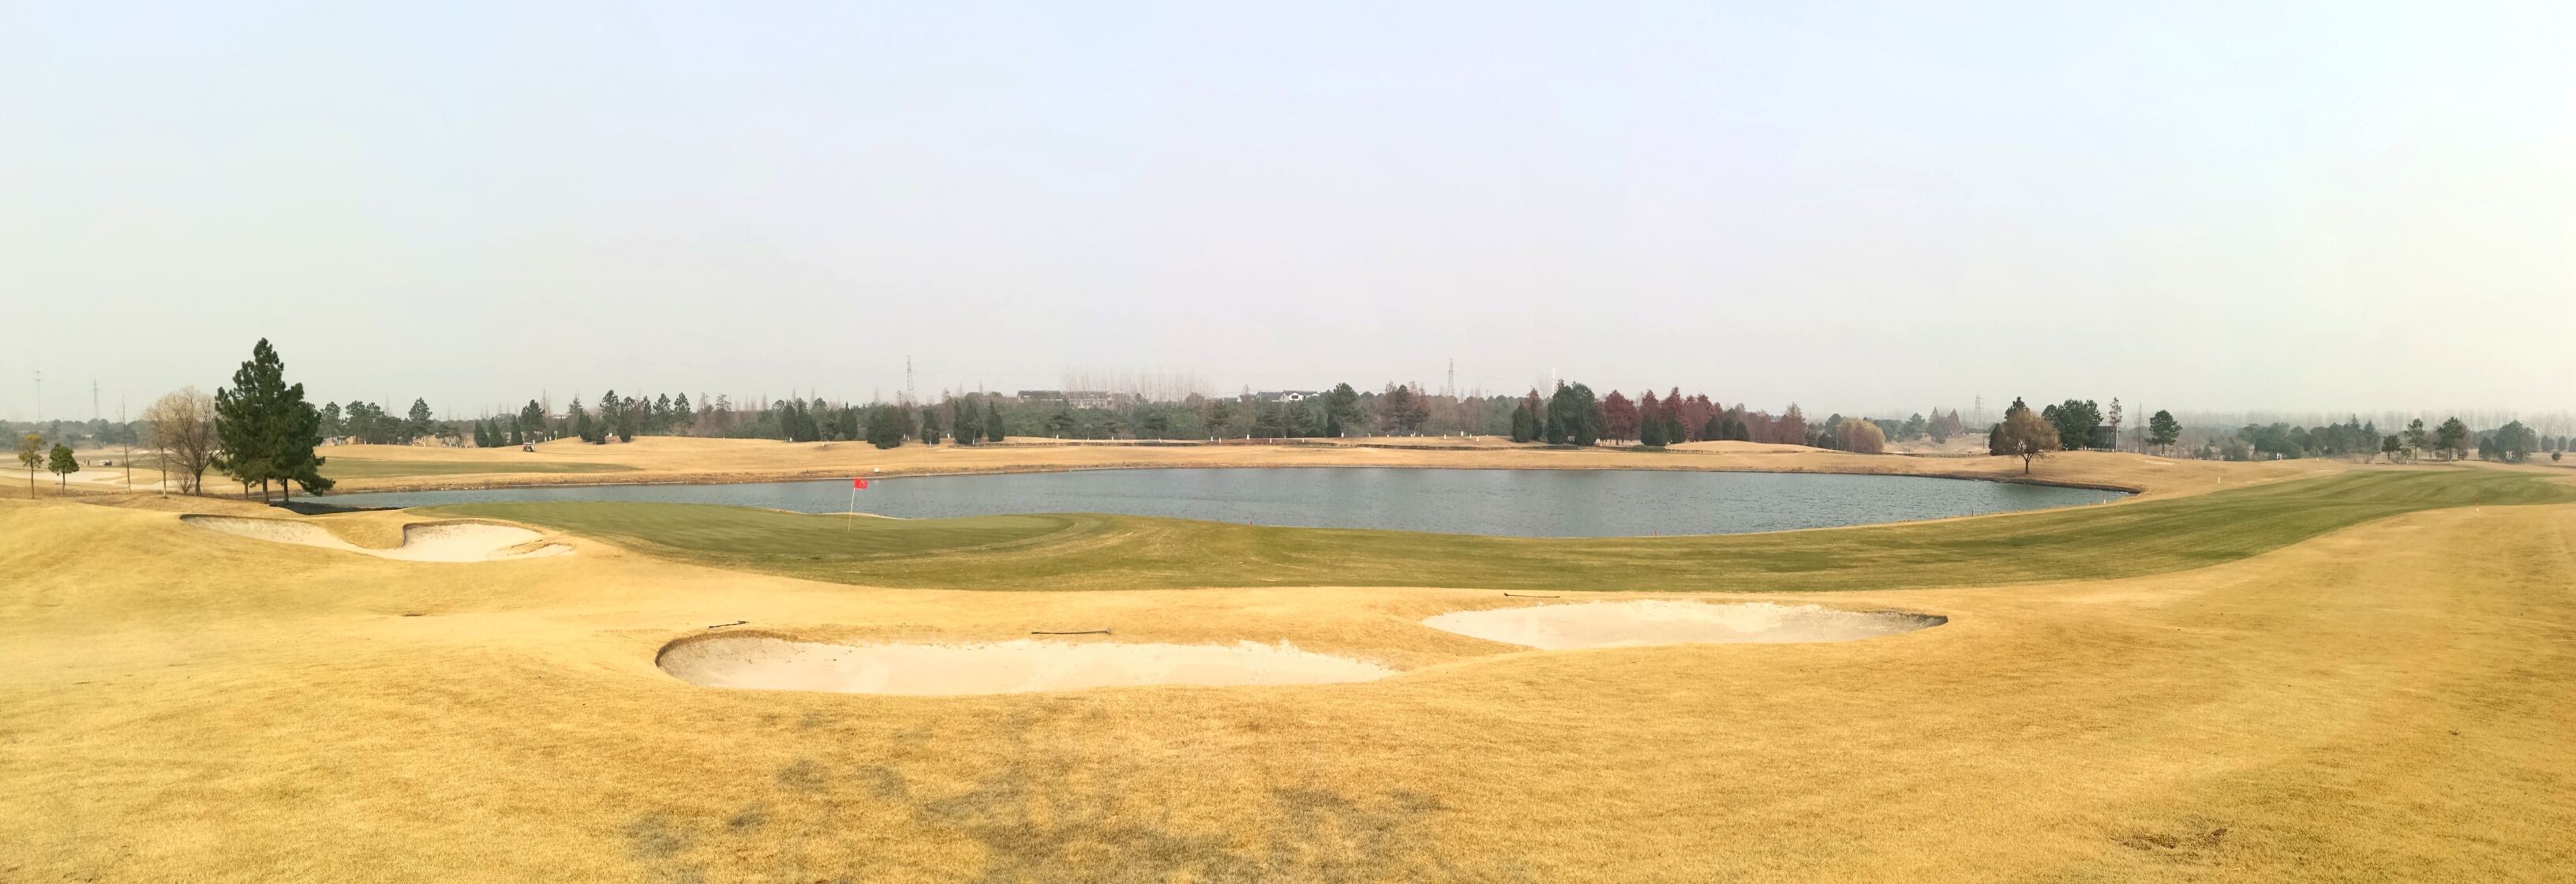 苏州太阳岛高尔夫球场图片